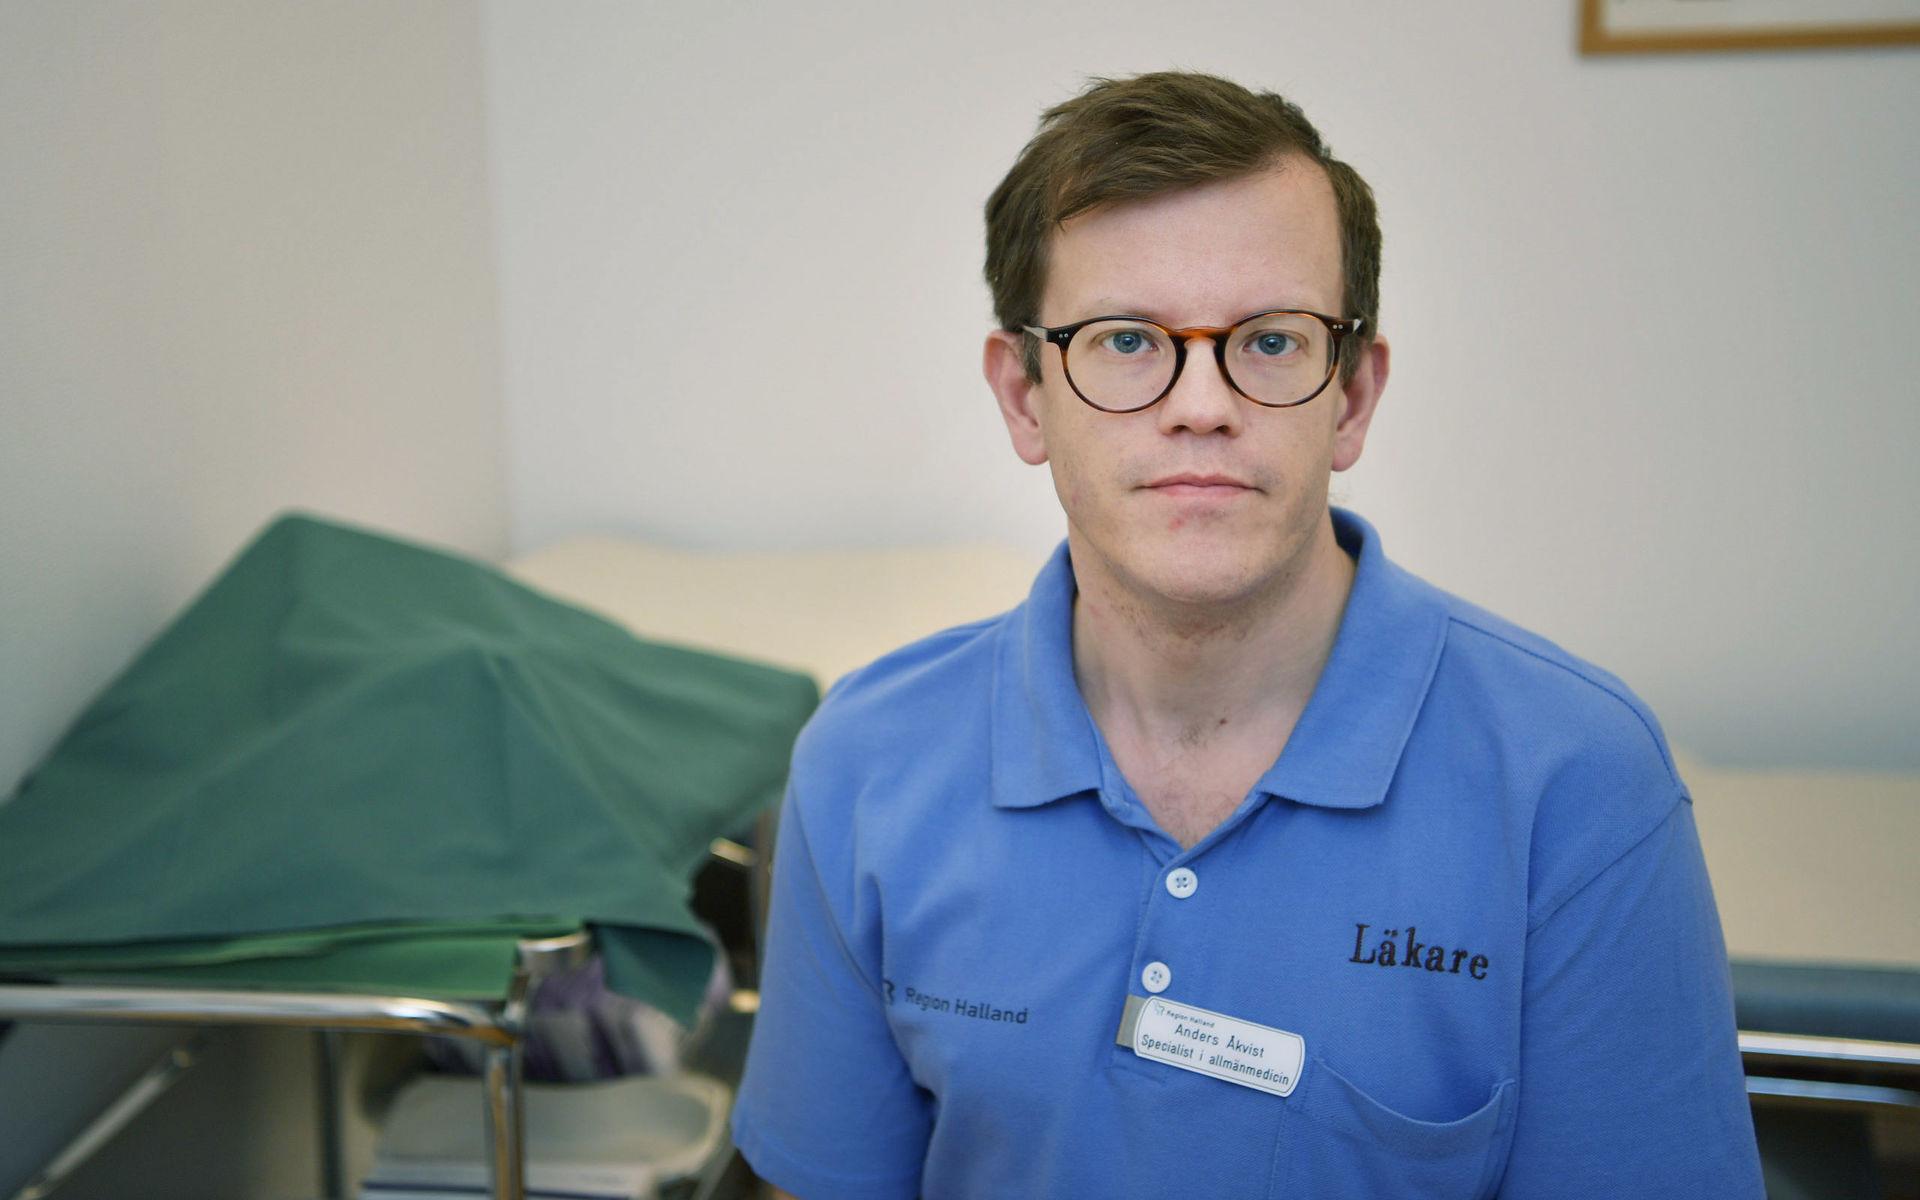 Anders Åkvist är tillförordnad chefläkare i Region Halland och en av dem som varit med och tagit fram riktlinjerna för palliativ vård i Halland. Han säger att han inte vet varför Socialstyrelsen rekommenderar syrgas som en behandling.